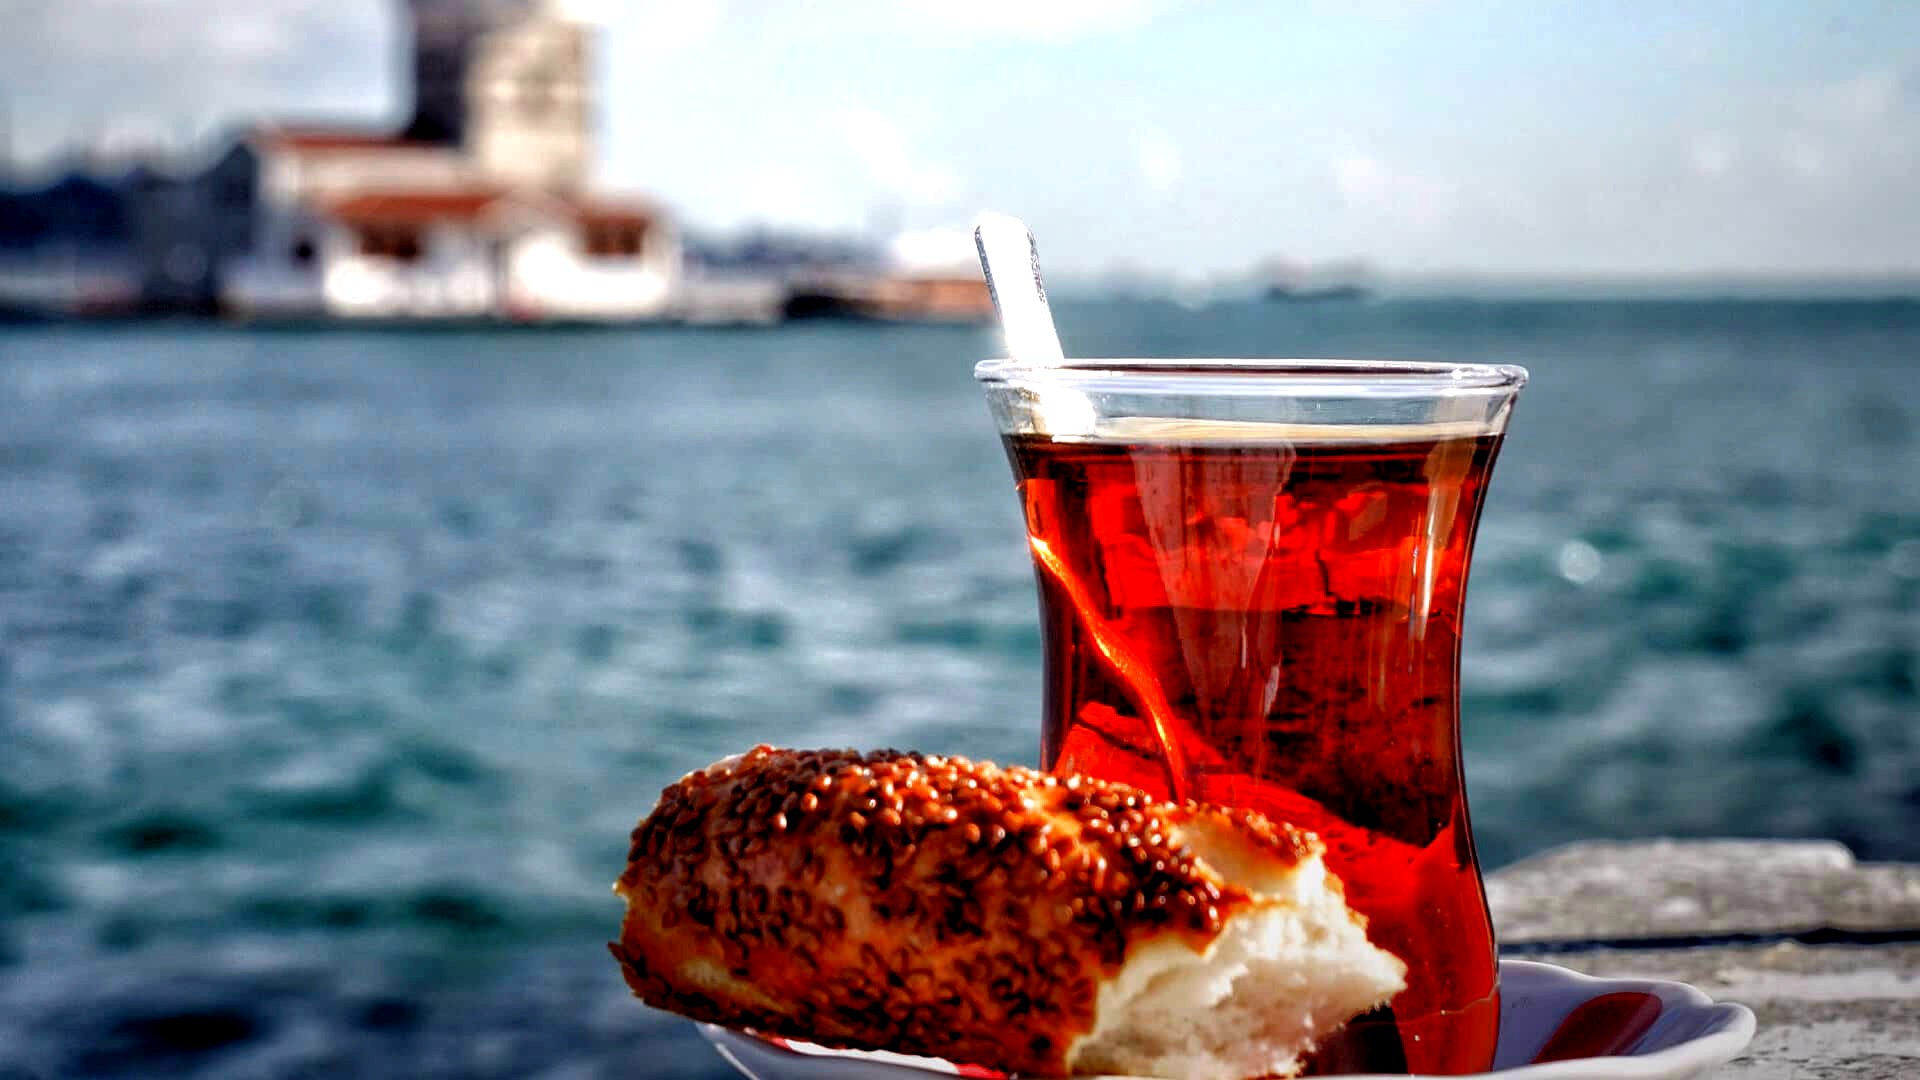 Ну и конечно же, турецкий чай с булочкой Симит